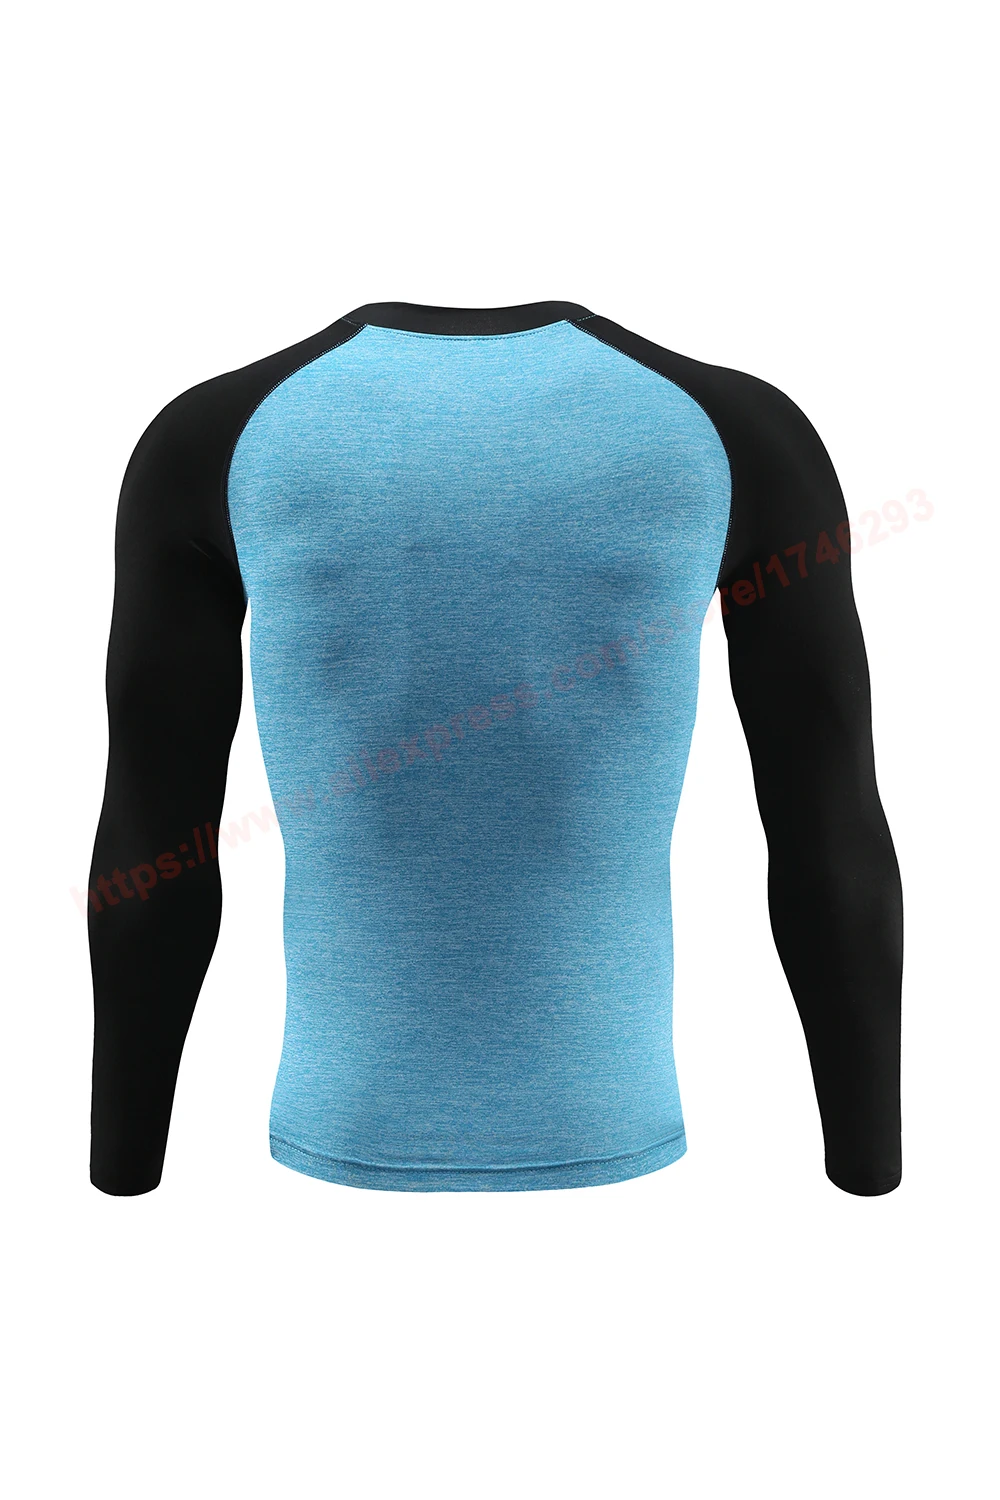 Мужские спортивные футболки с длинным рукавом для бега, спортивная одежда с капюшоном для спортзала, мужские компрессионные футболки для тренировок, одежда для спортзала